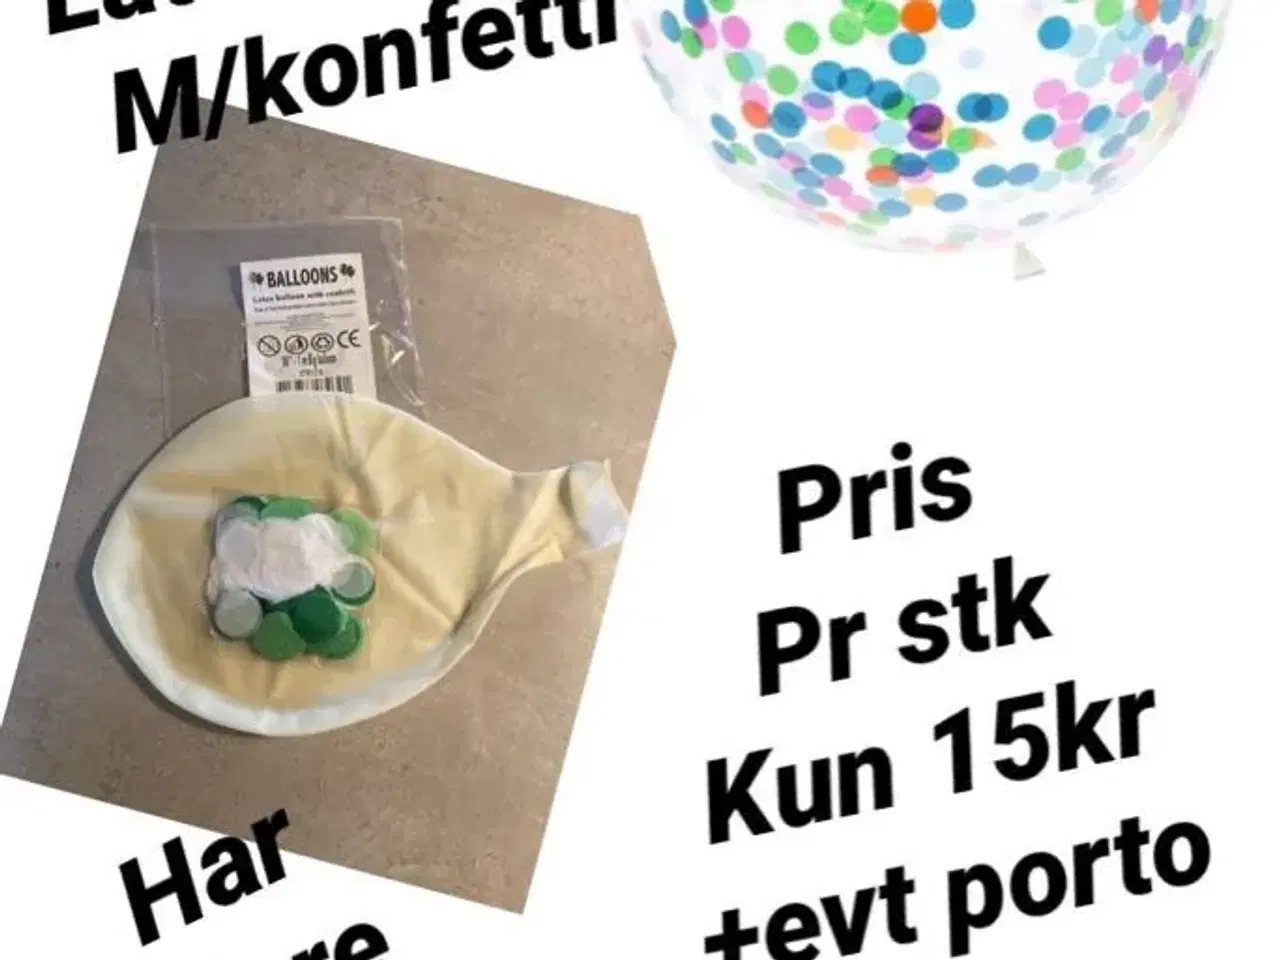 Billede 1 - 1 meters ballon m/konfetti